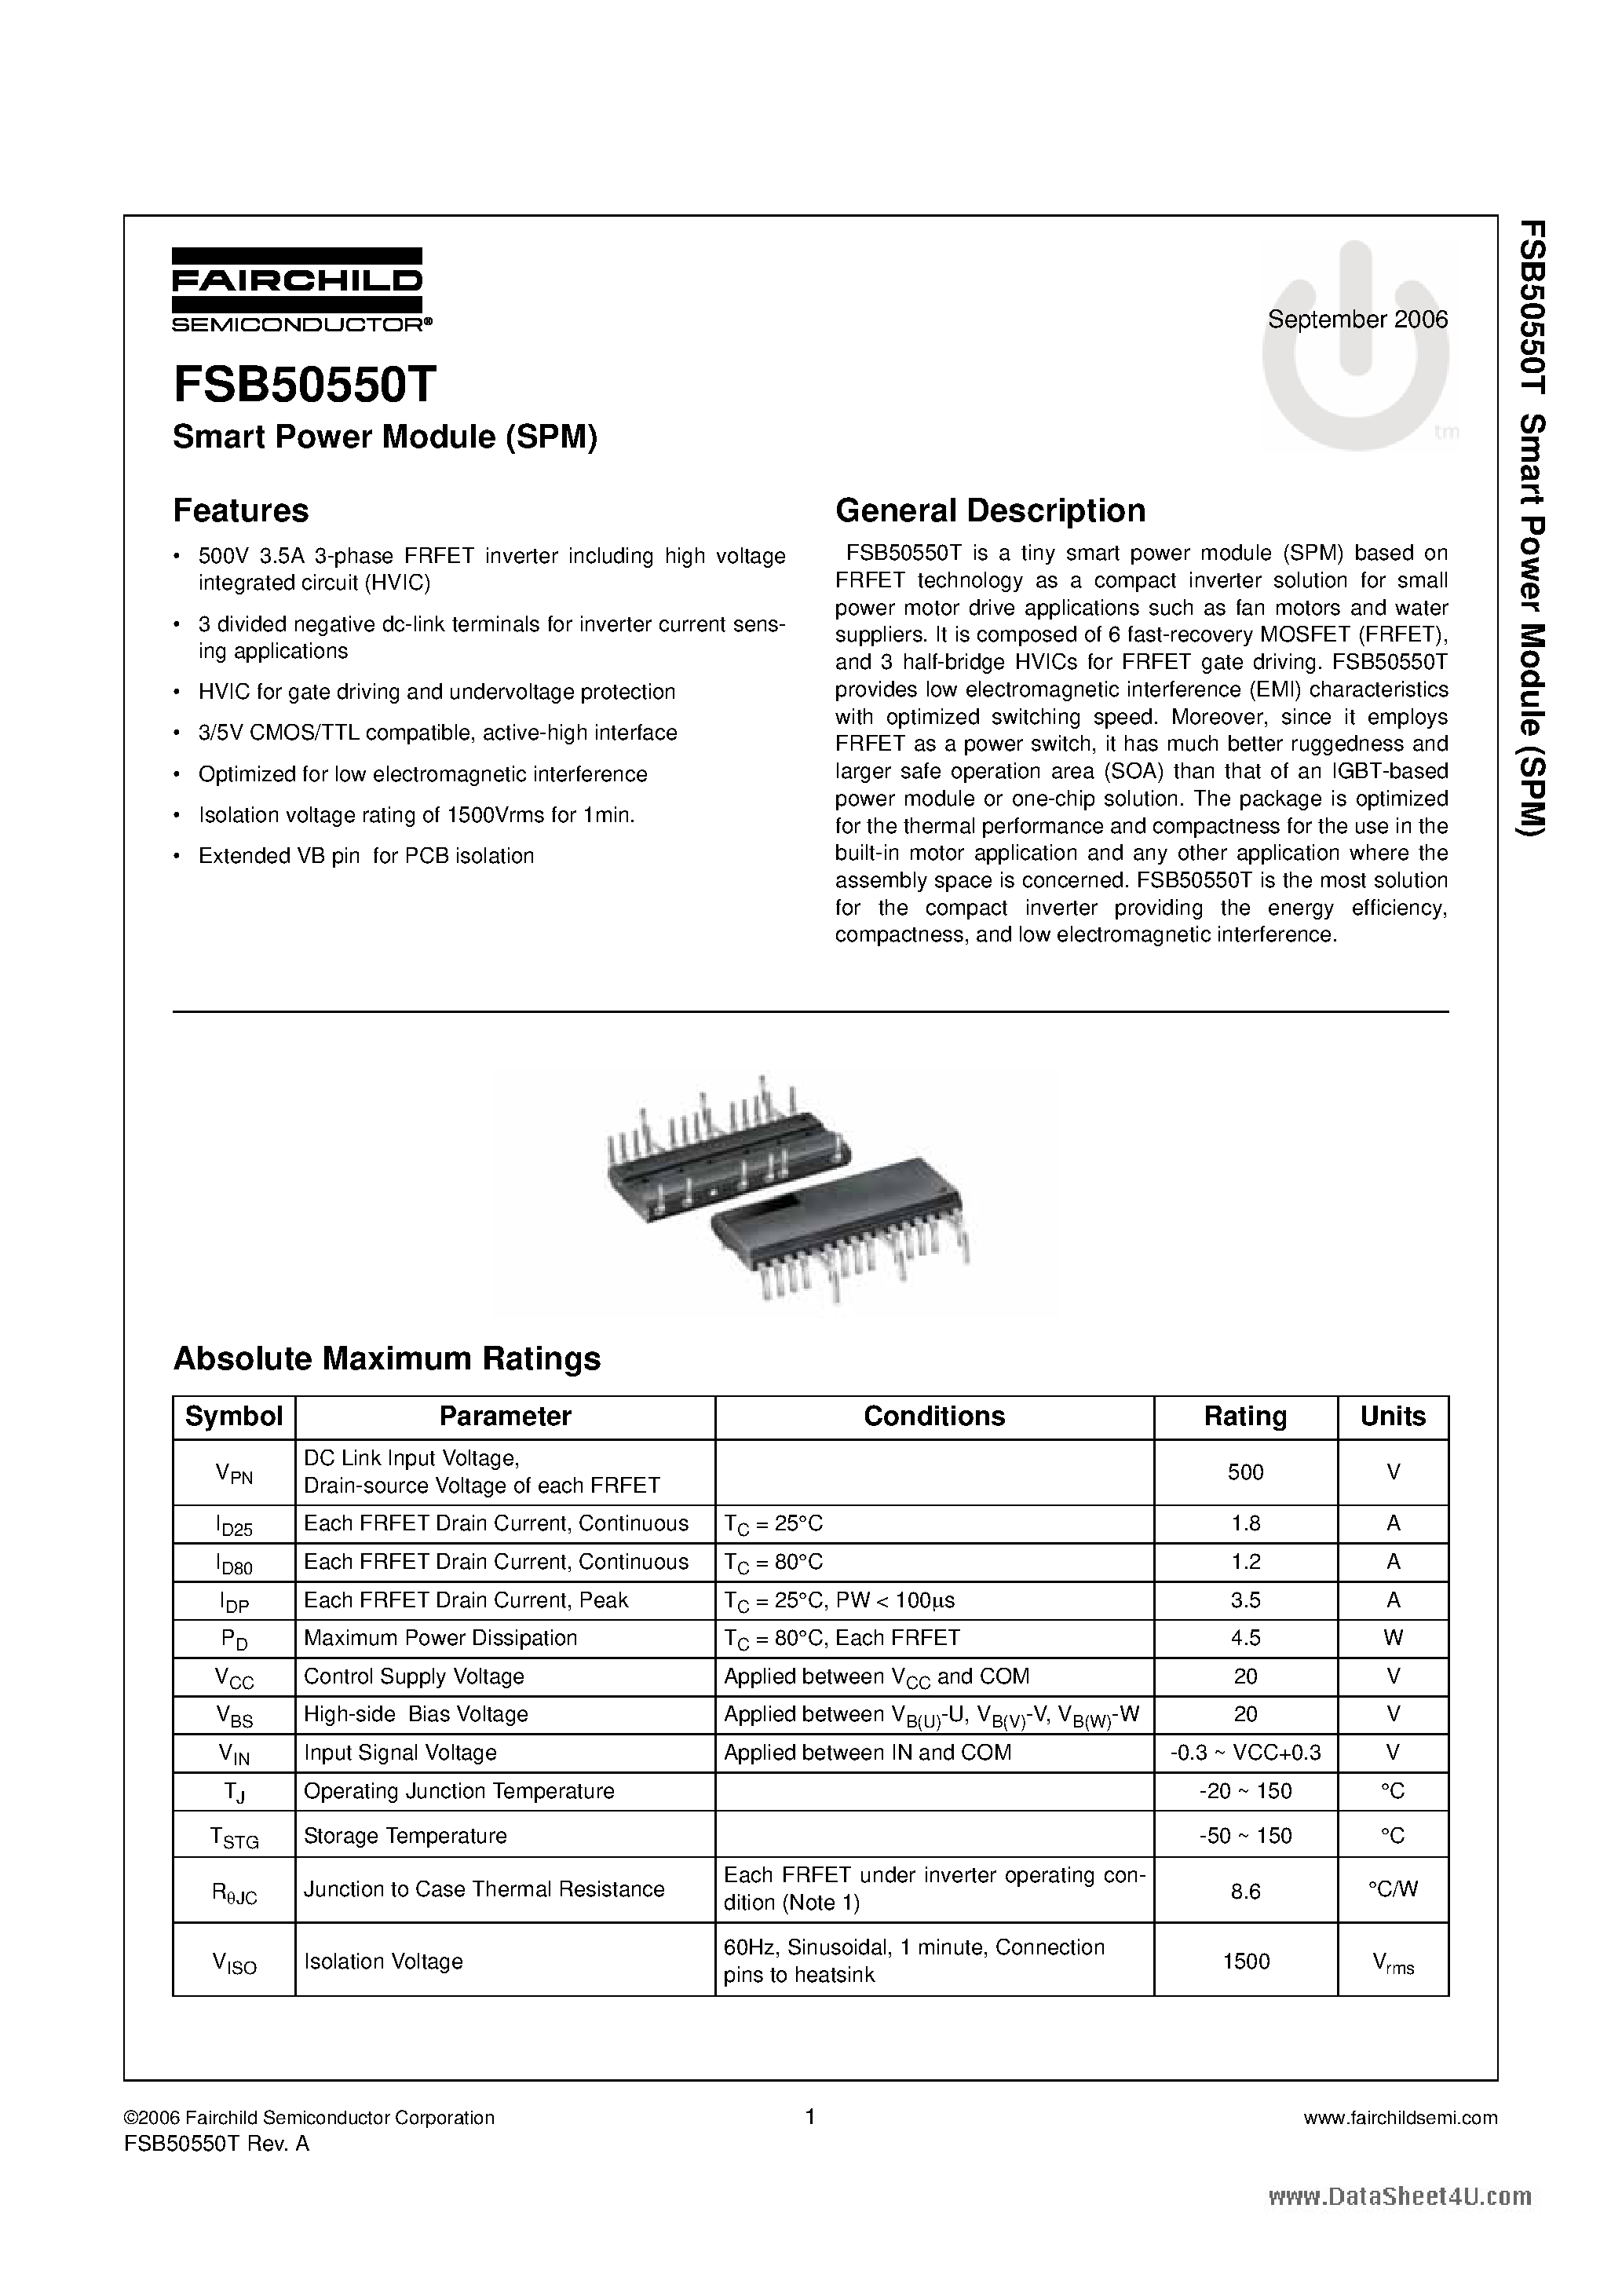 Даташит FSB50550T - Smart Power Module страница 1